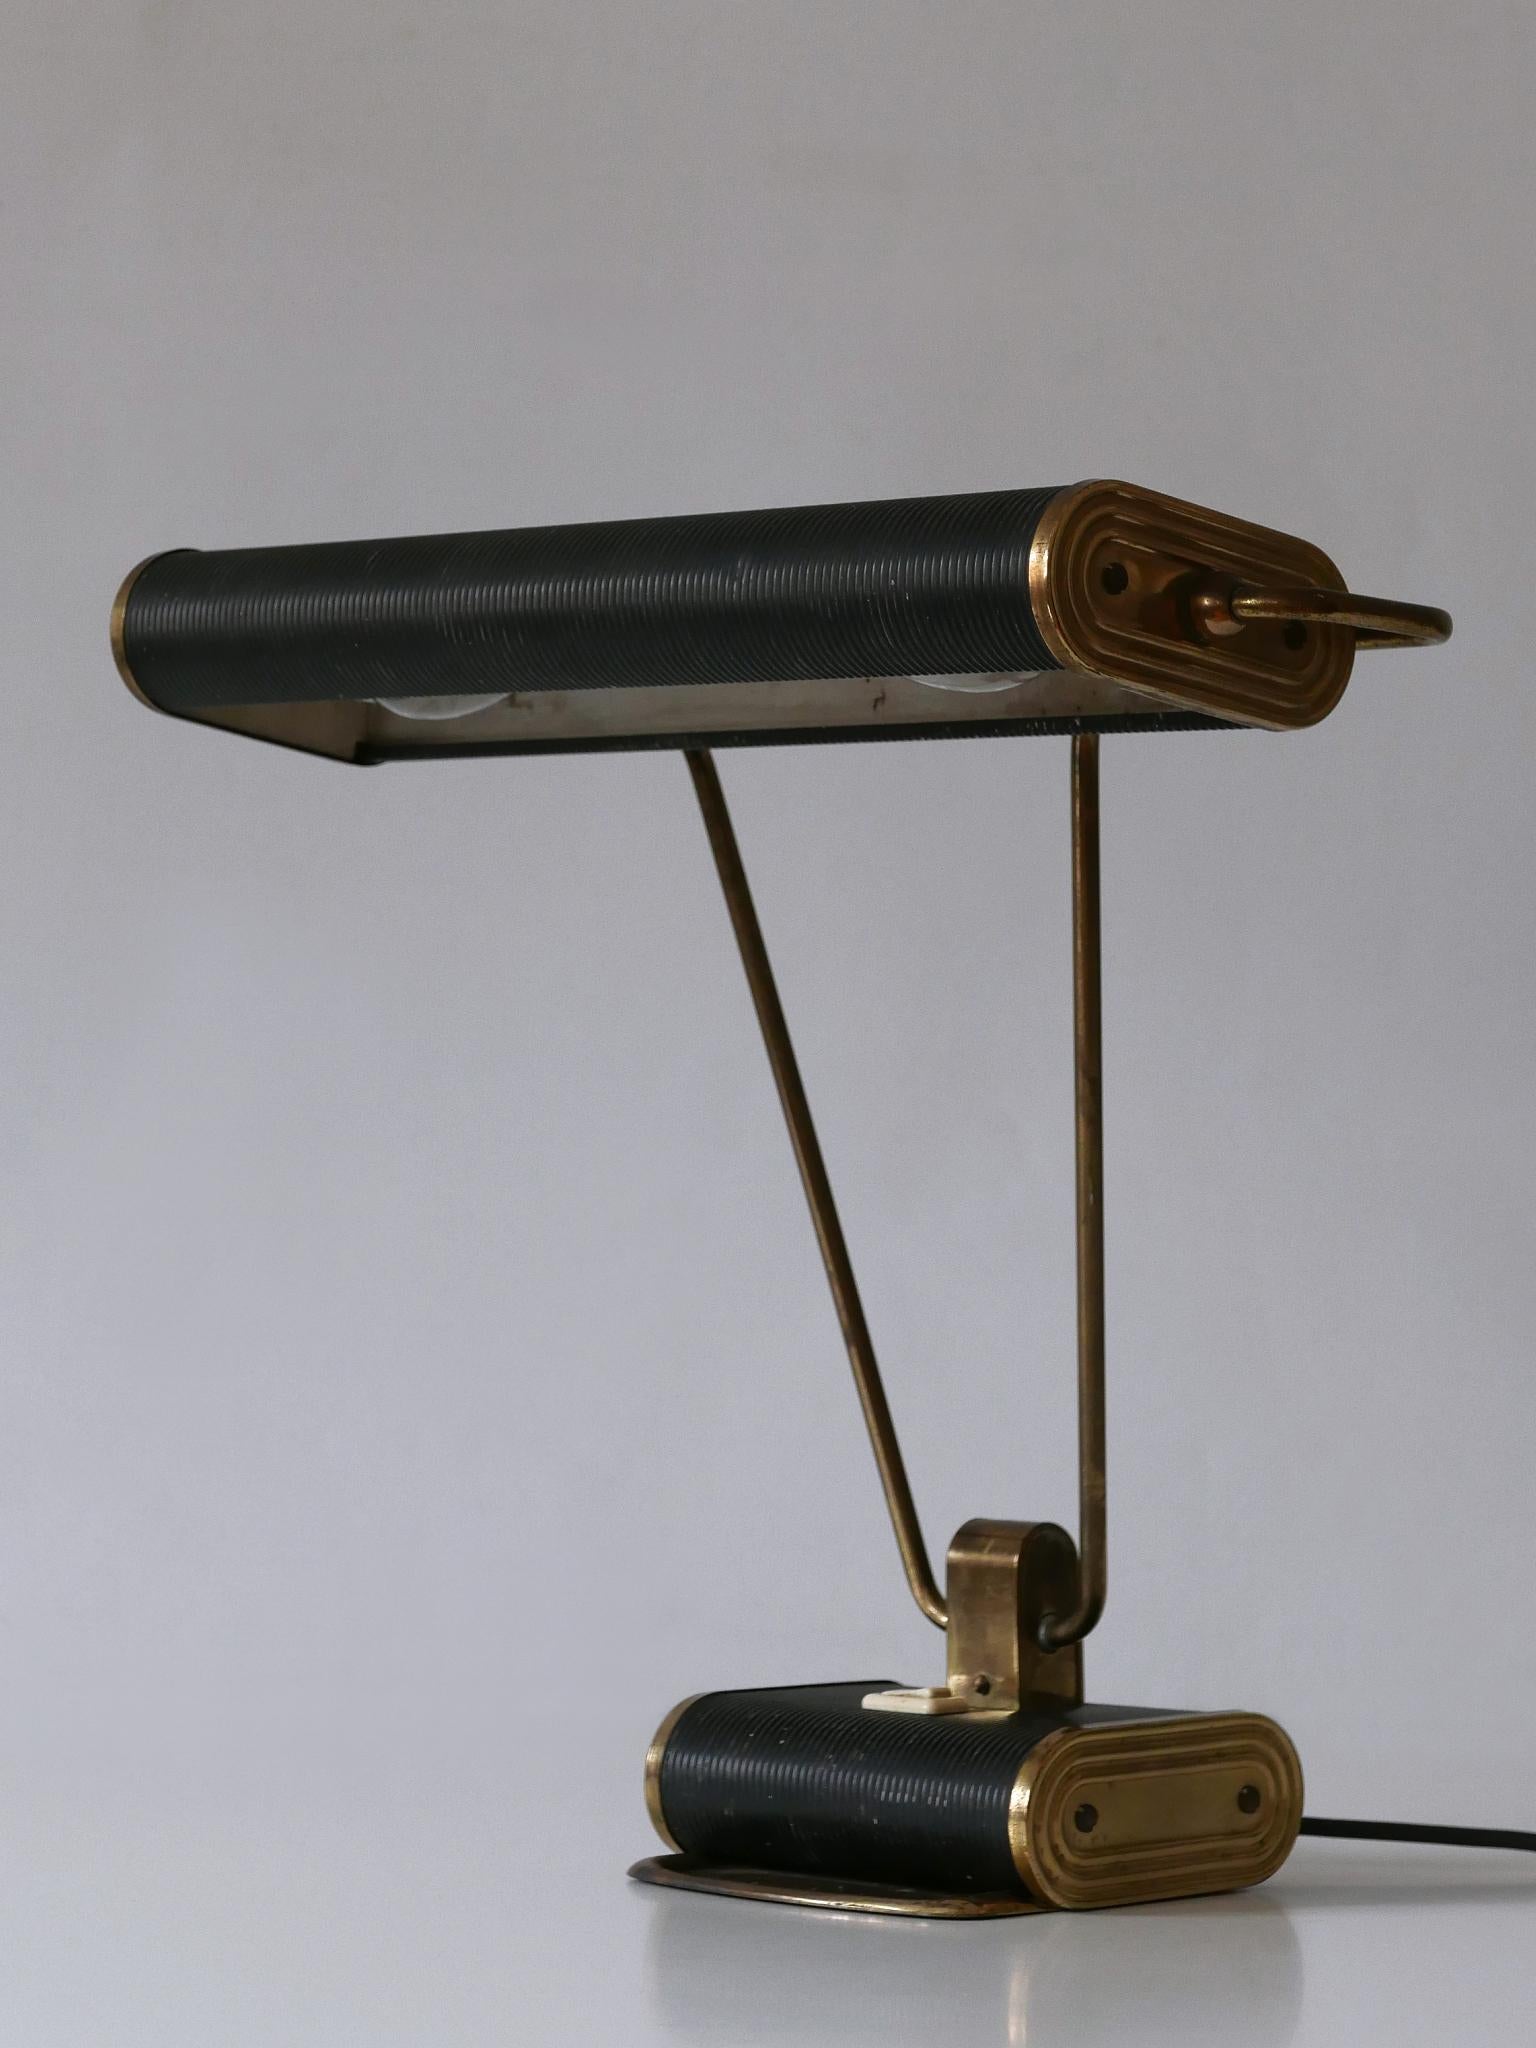 Elégante lampe de table ou de bureau Art Deco 'No 71'. Abat-jour rotatif. Conçu par André Mounique pour Jumo, France, années 1930.

Un total de 5 lampes en deux couleurs est disponible !
Il s'agit du numéro 2 des cinq lampes de bureau. Les images